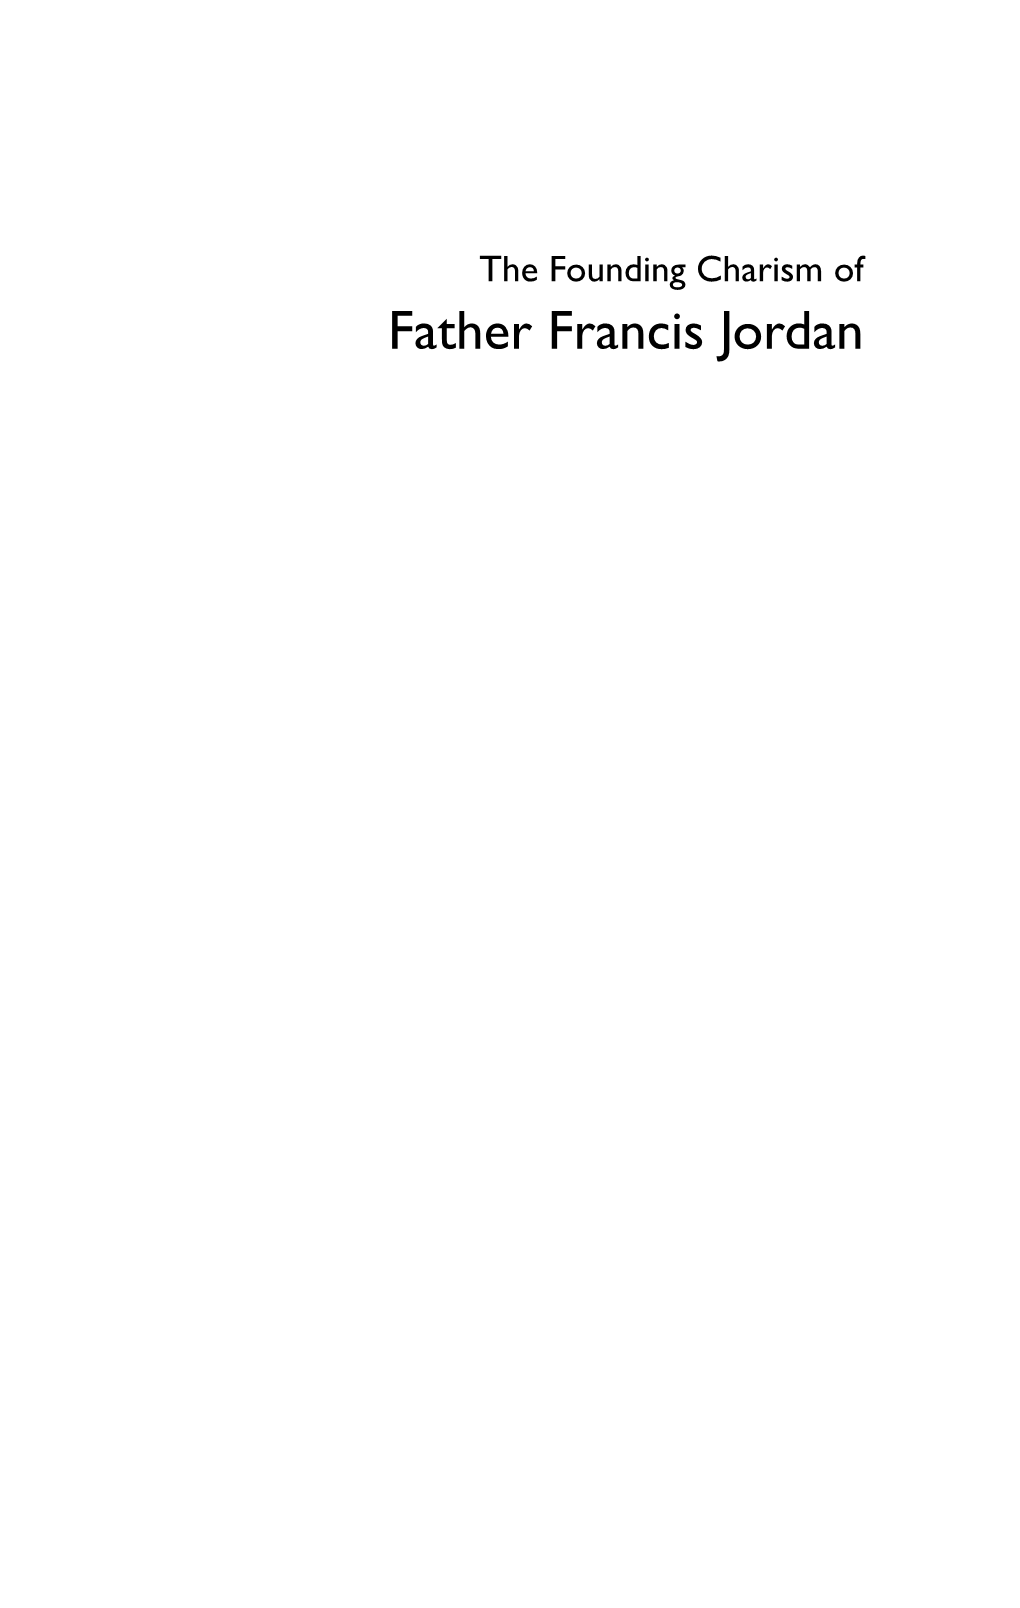 Father Francis Jordan